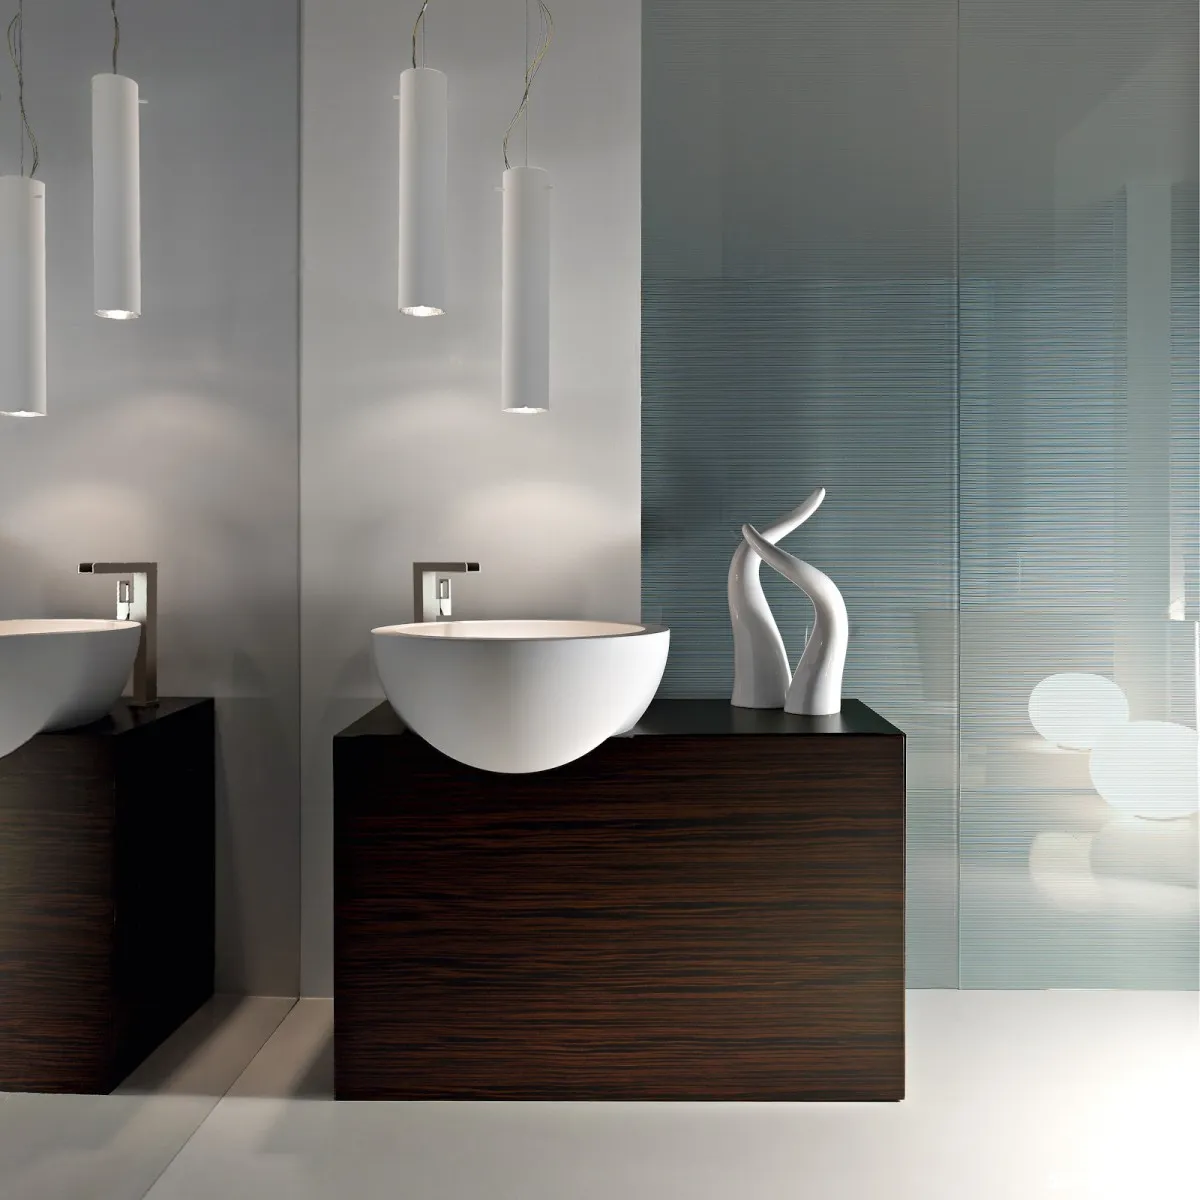 20141010150816483 Hai bộ sưu tập nội thất phòng tắm gỗ của hãng Toscoquattro đến từ Ý